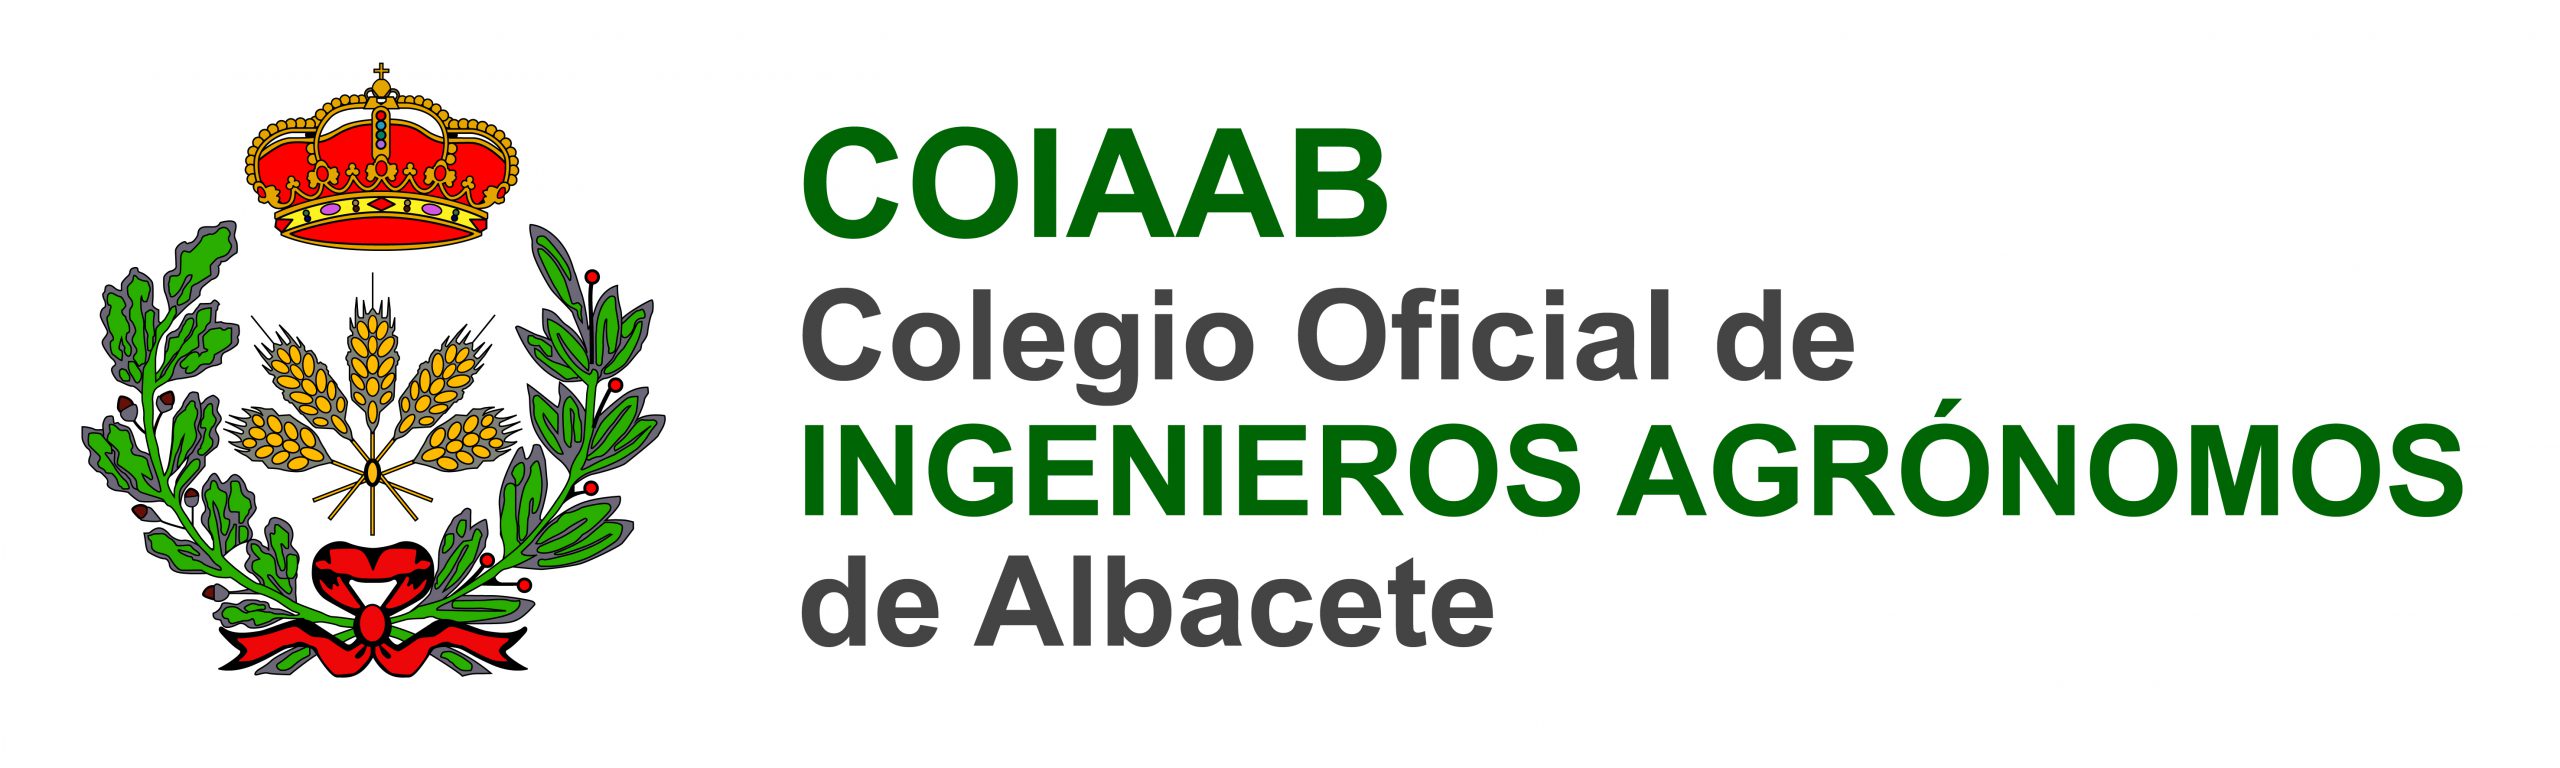 Colegio Oficial de Ingenieros Agr贸nomos de Albacete